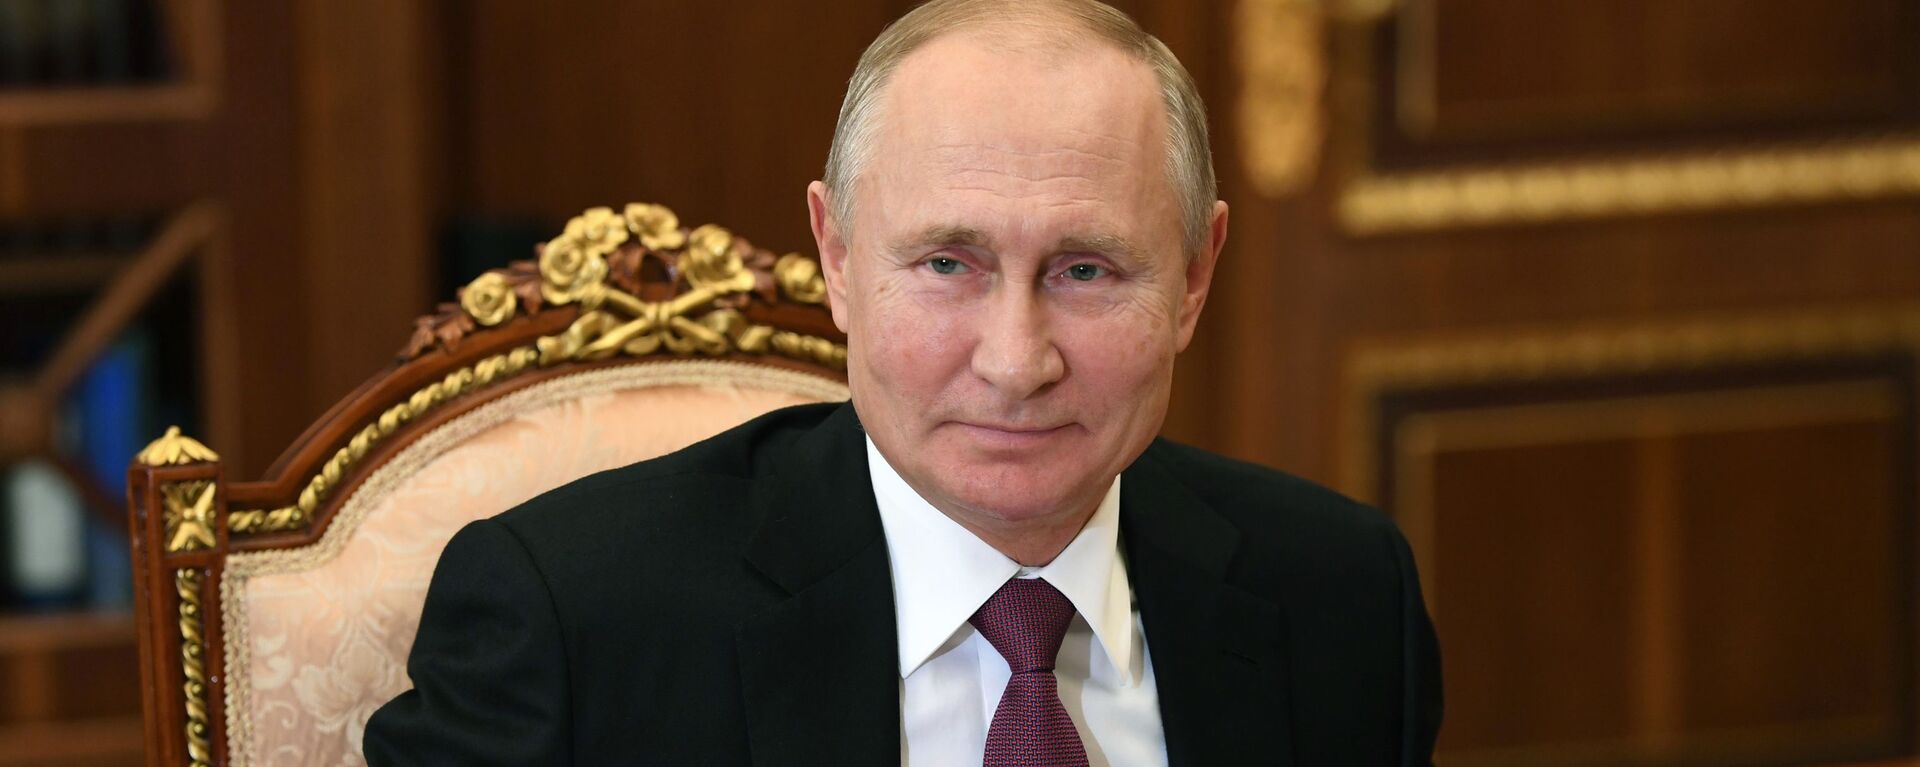 Vladímir Putin, el presidente de Rusia - Sputnik Mundo, 1920, 18.03.2021